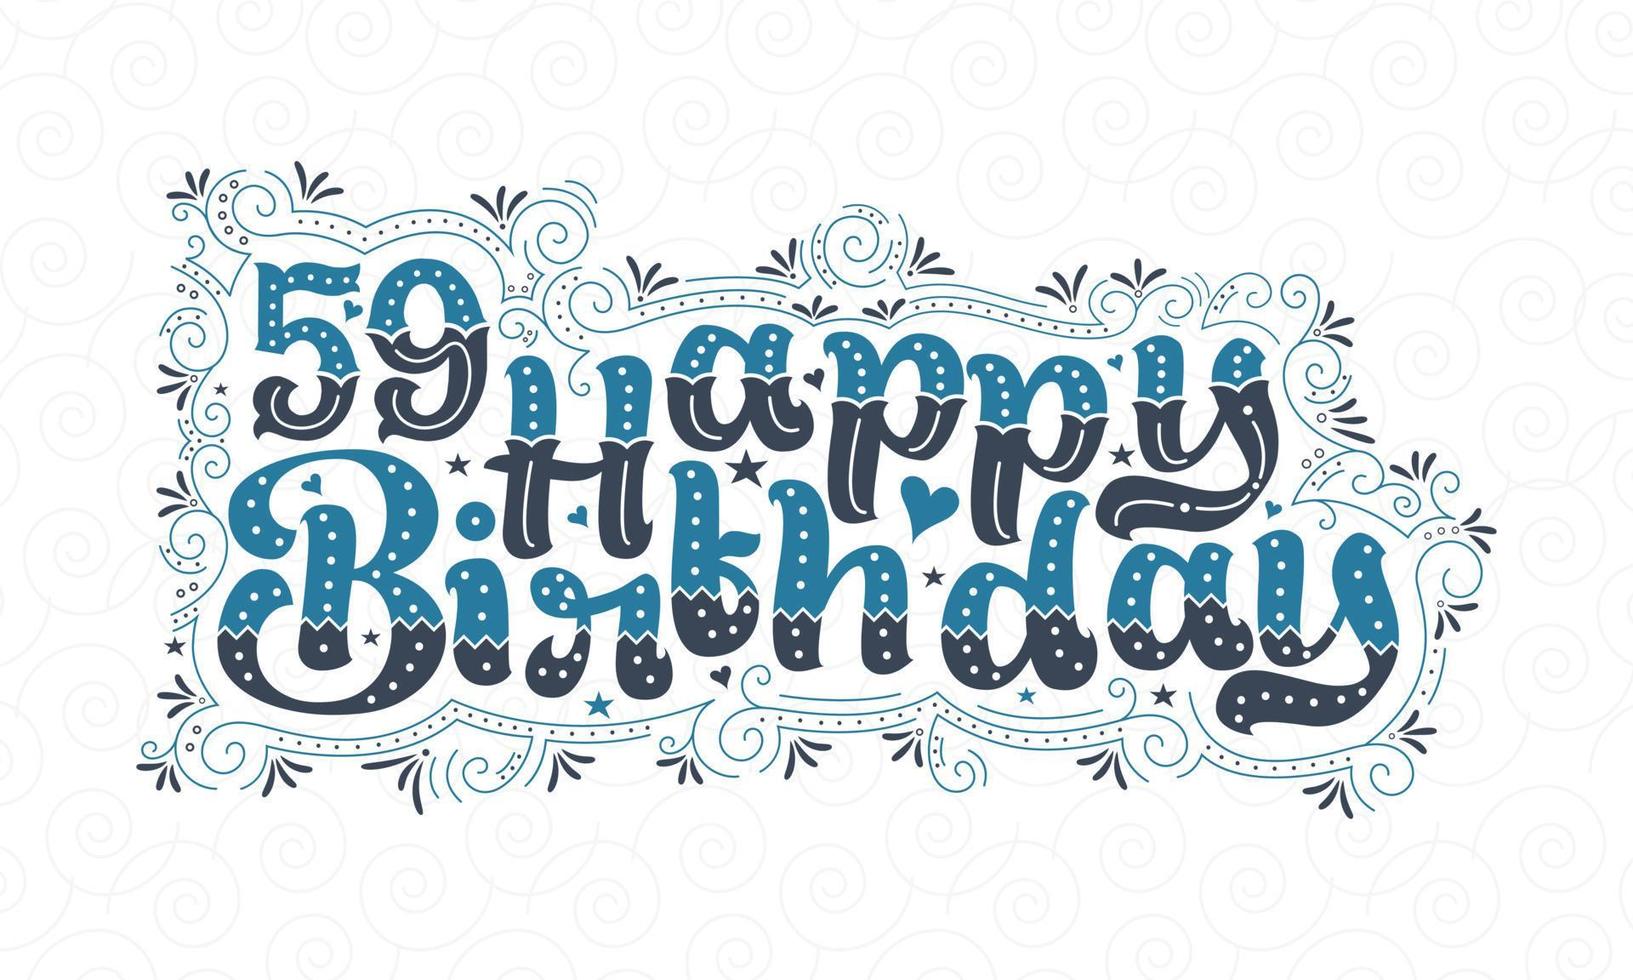 59. Happy Birthday Schriftzug, 59 Jahre Geburtstag schönes Typografie-Design mit blauen und schwarzen Punkten, Linien und Blättern. vektor